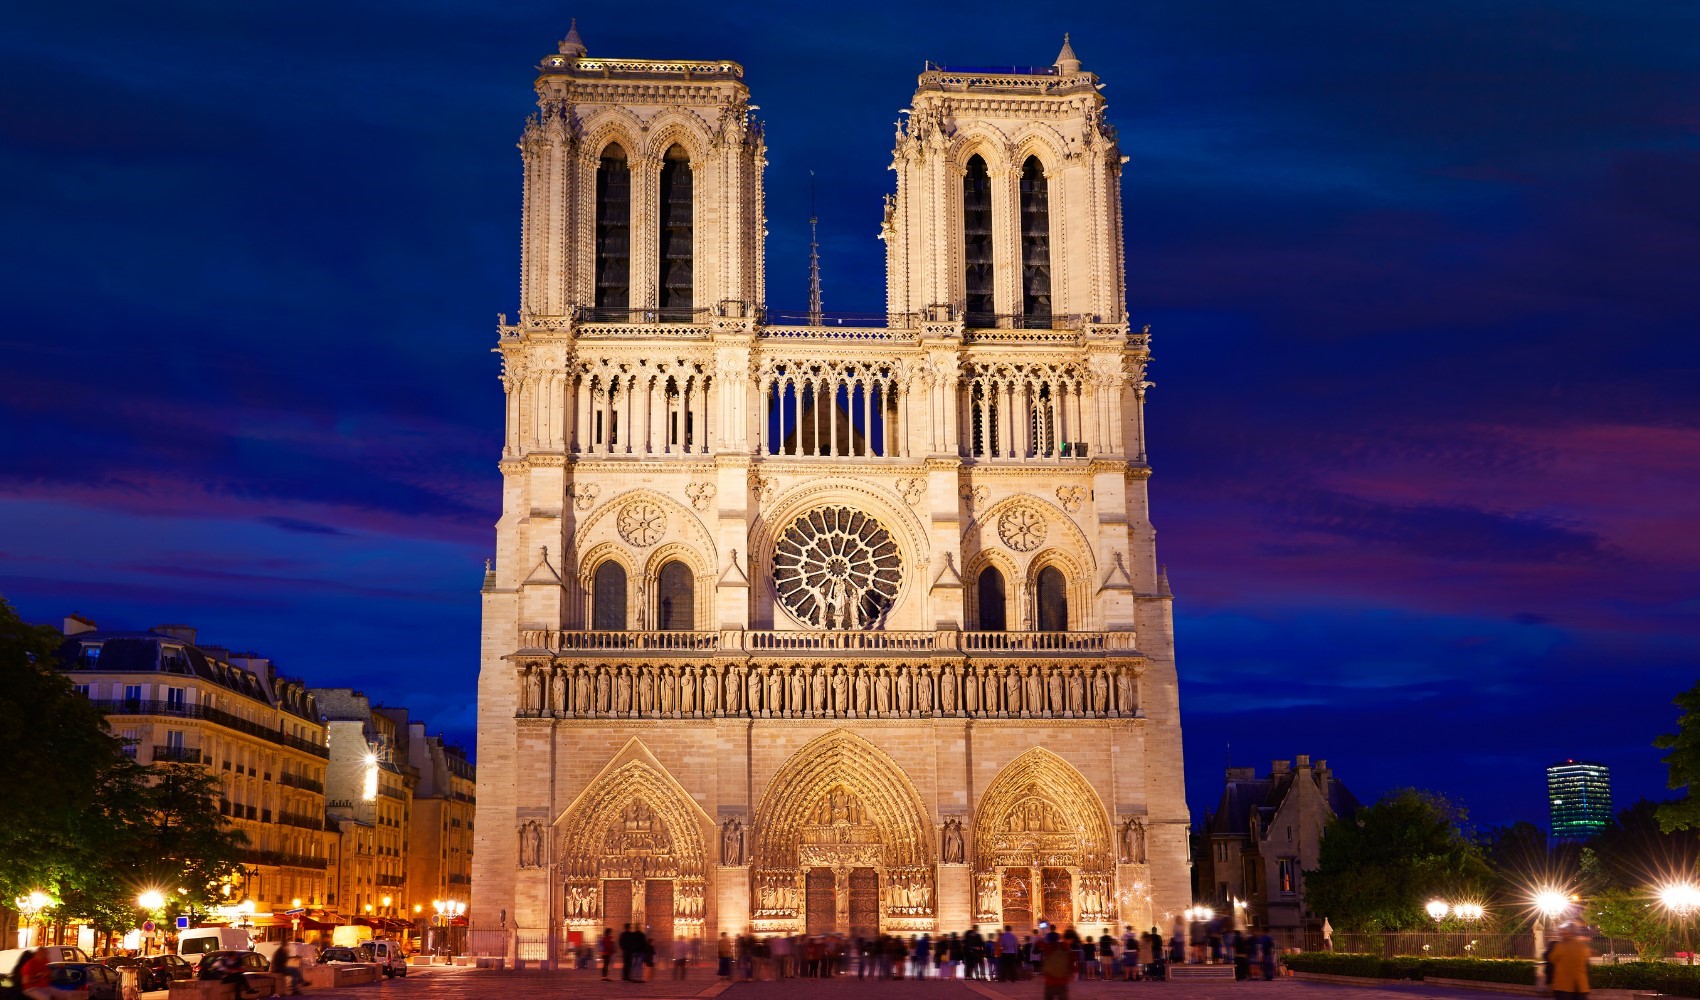 Paris’in sembollerinden: Notre-Dame Katedrali’nin açılış tarihi belli oldu